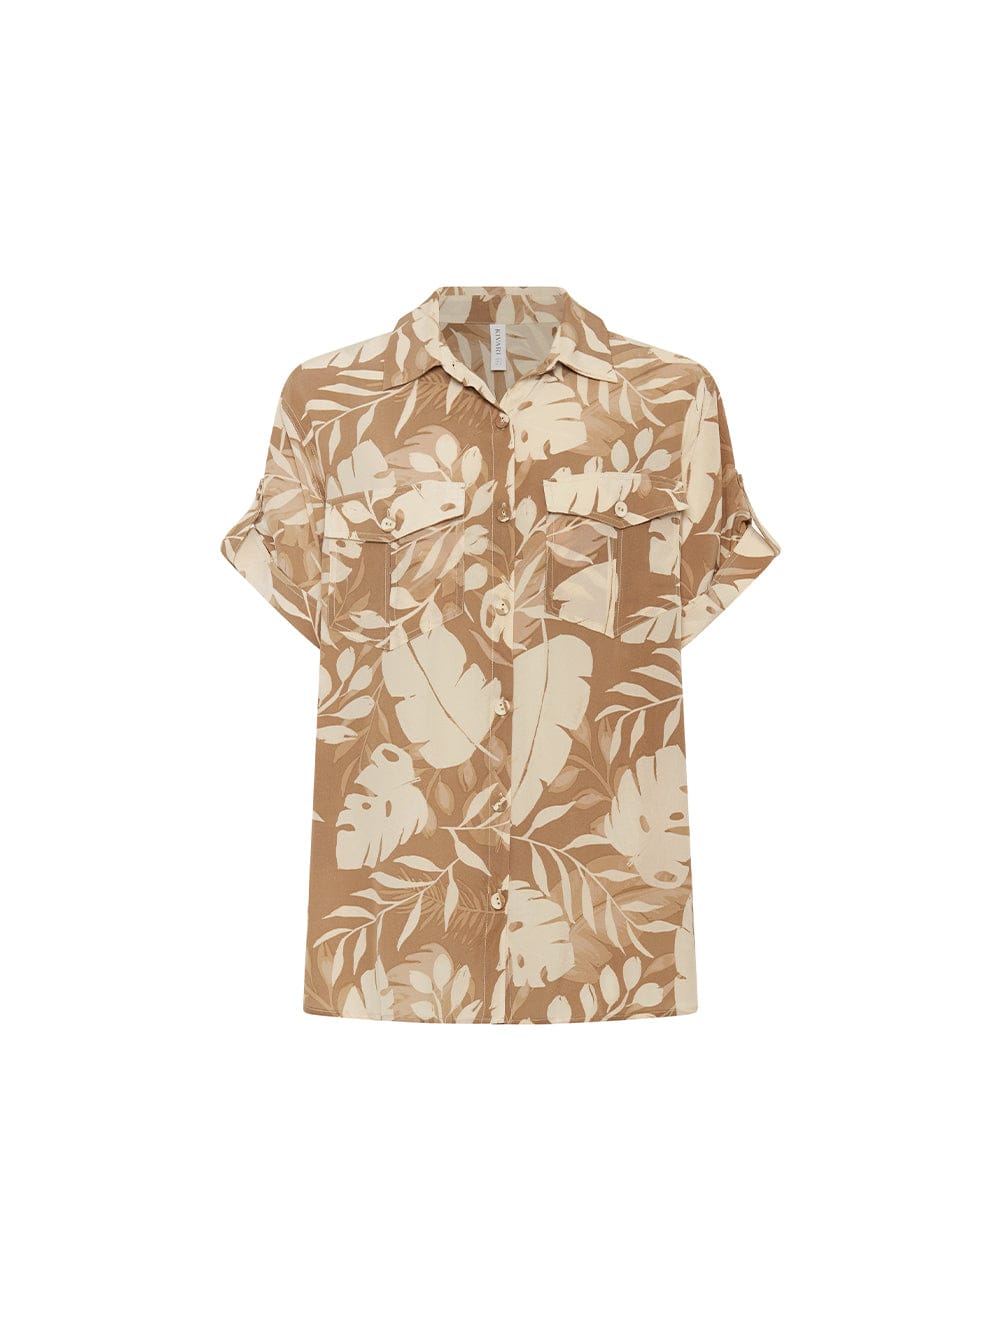 Cove Shirt KIVARI | Neutral coloured leaf printed shirt